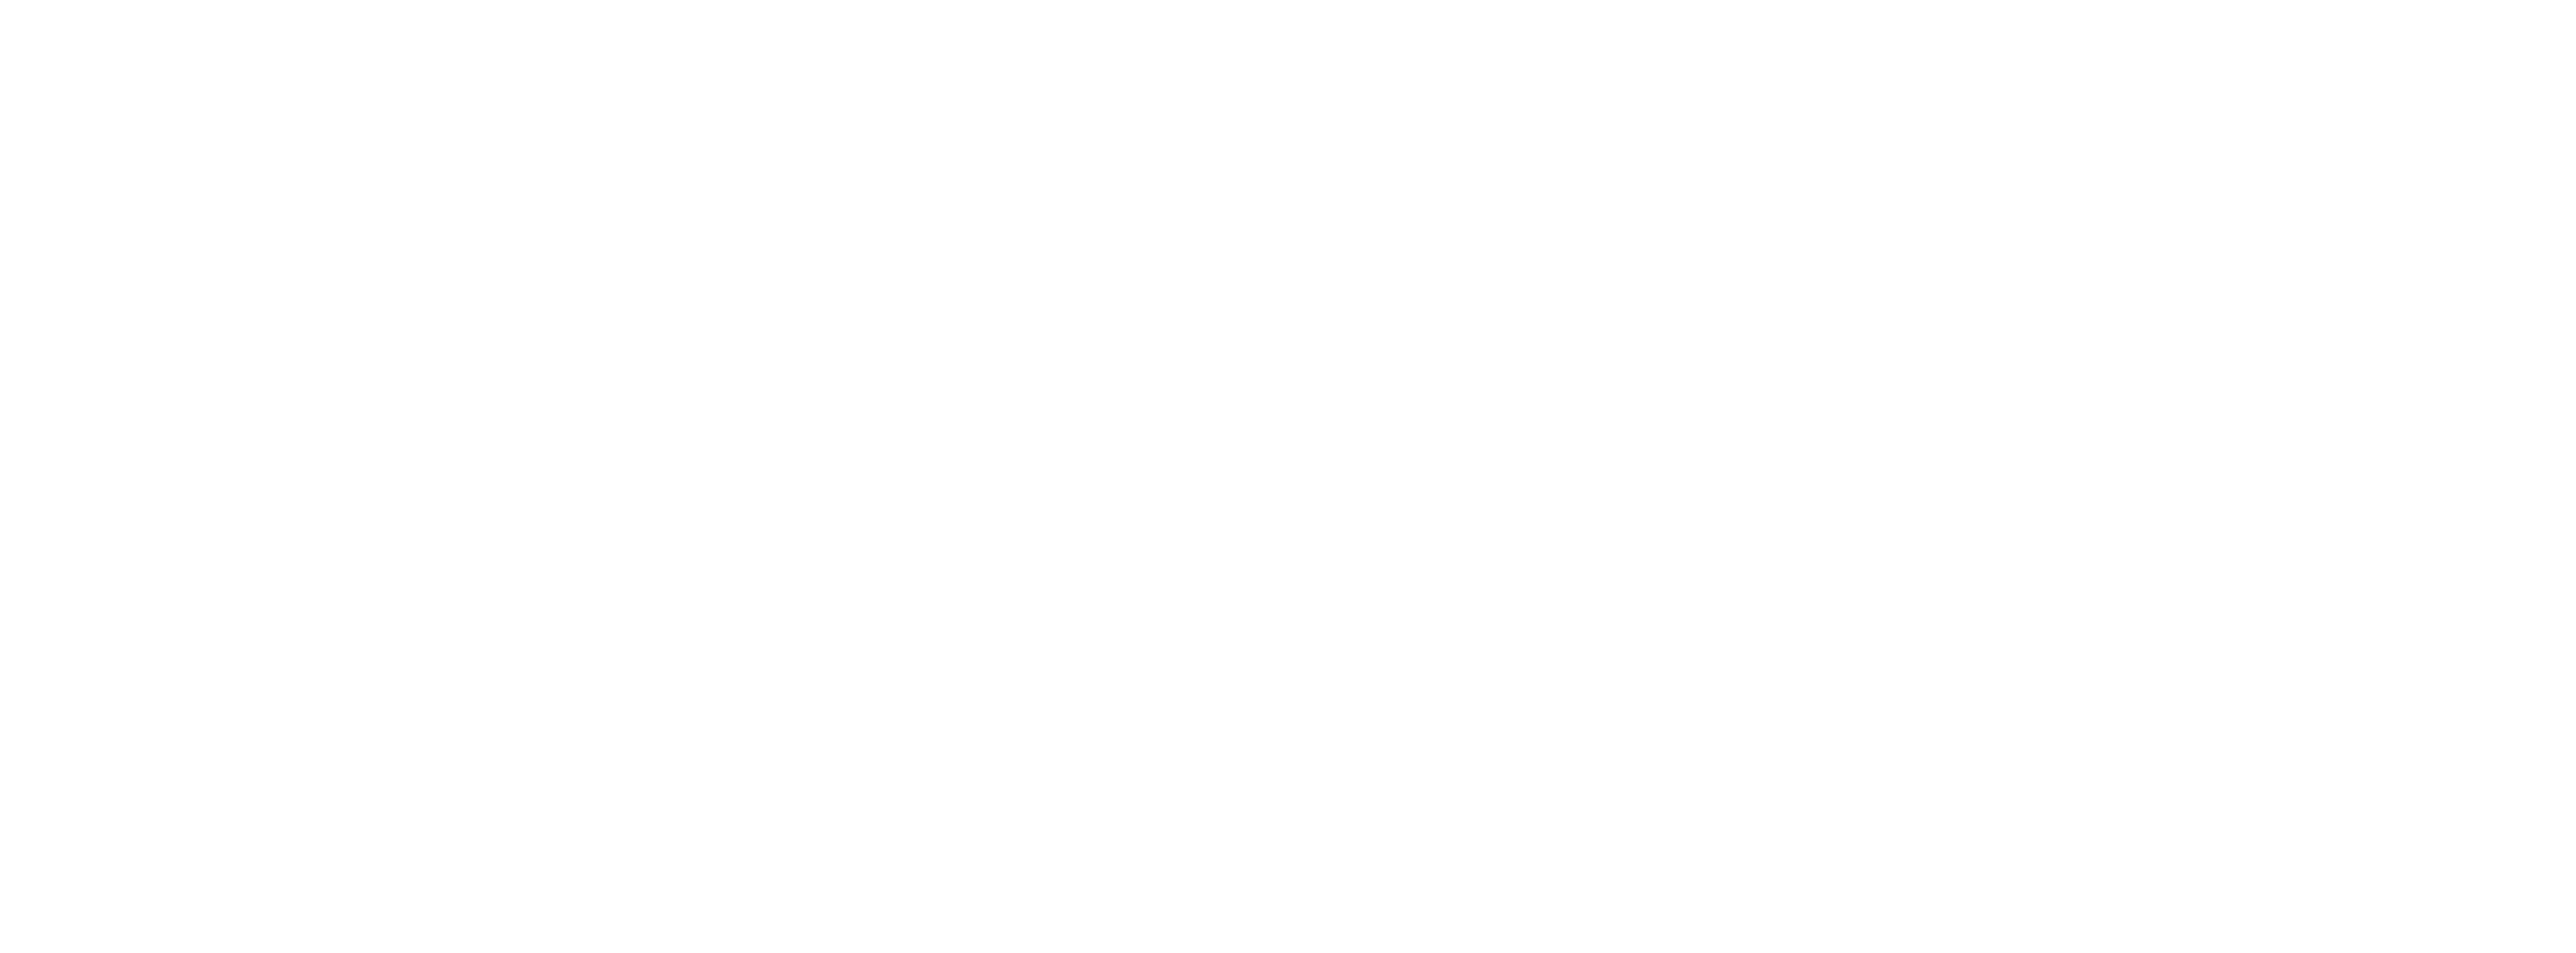 Logo de l'union professionnelle des ostéopathes. Ce logo certifie que Timothée Boland est membre de Osteopathie.be